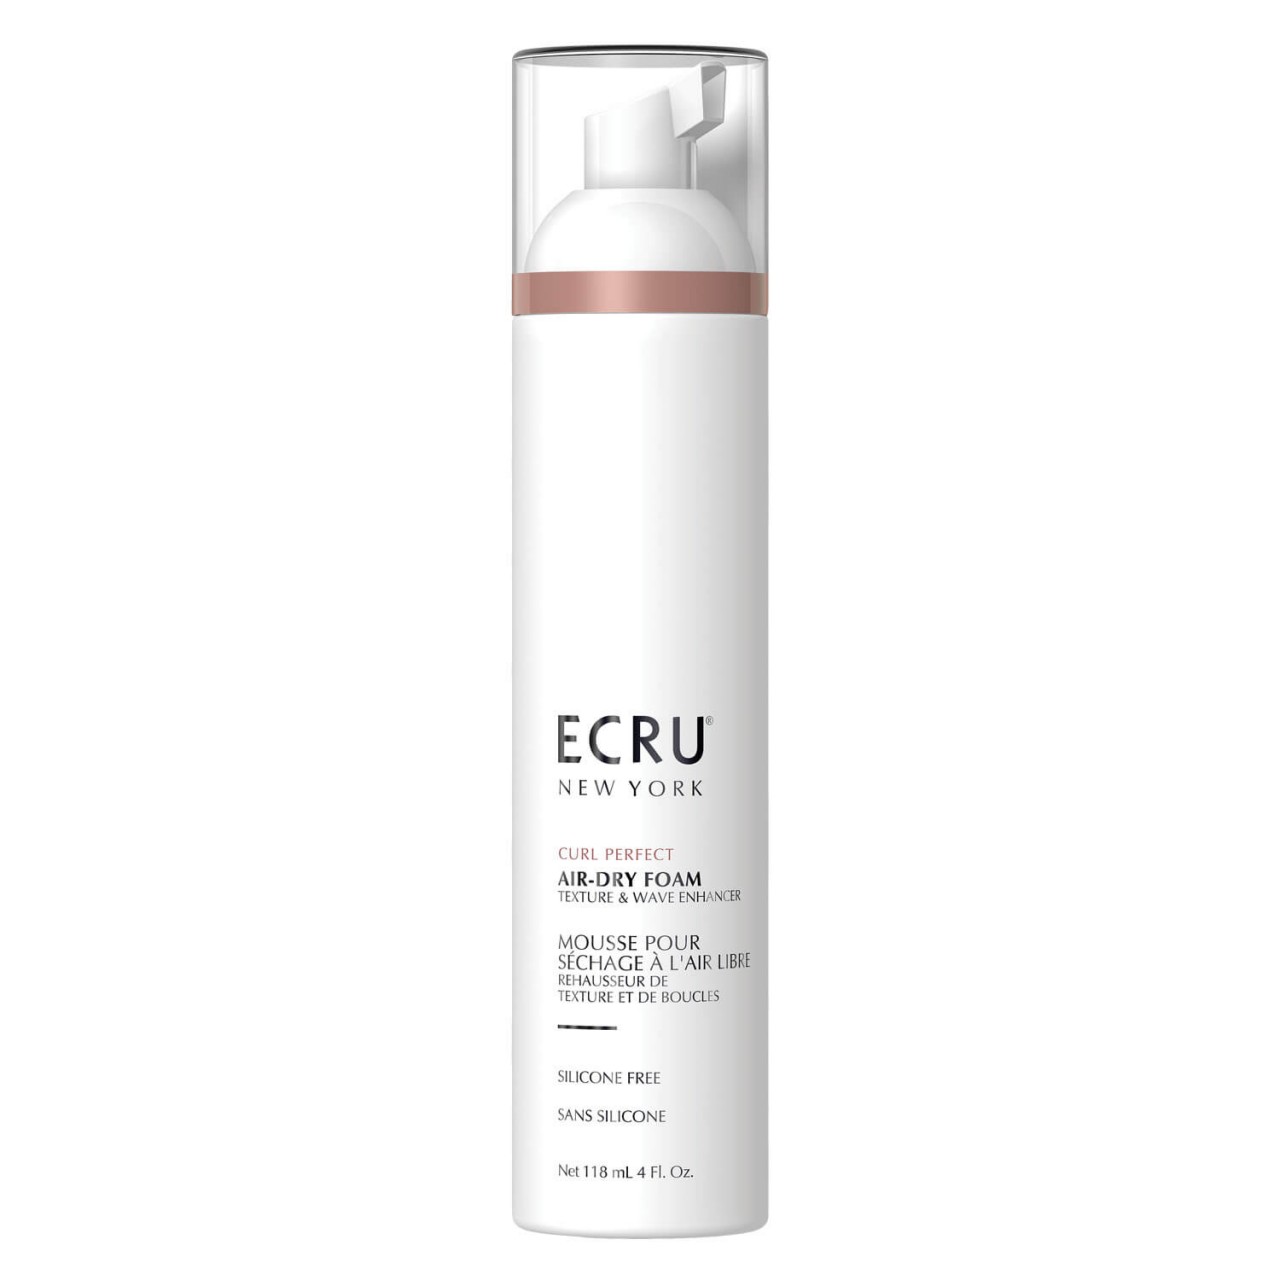 ECRU NY Curl Perfect - Air-Dry Foam von Ecru New York